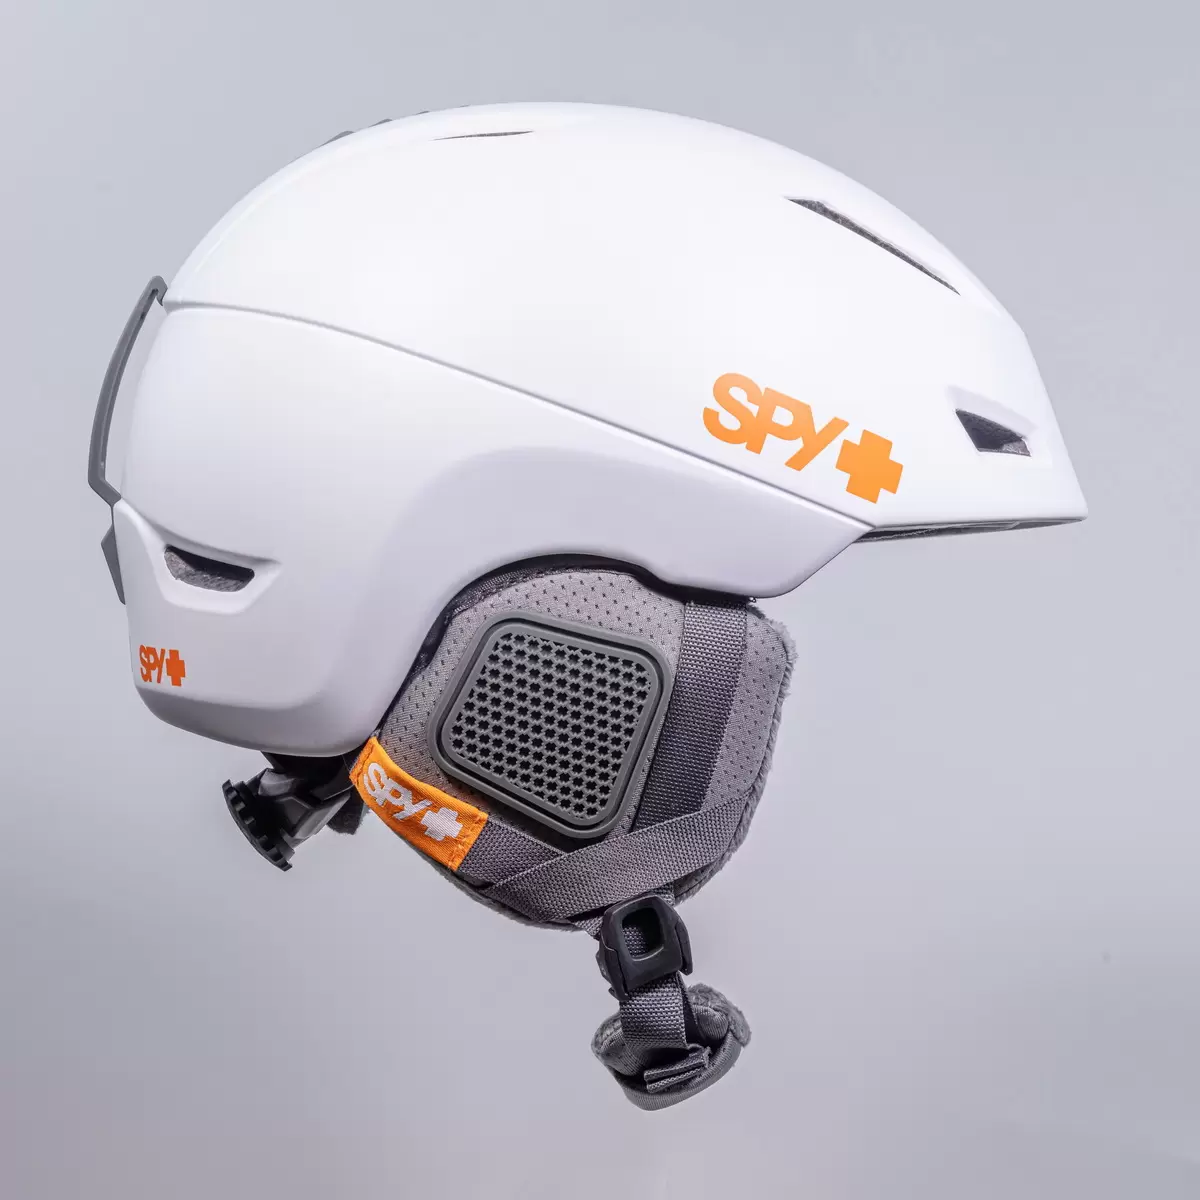 スパイ 大人用スノーヘルメット MIPSテクノロジー搭載 ホワイト / S 